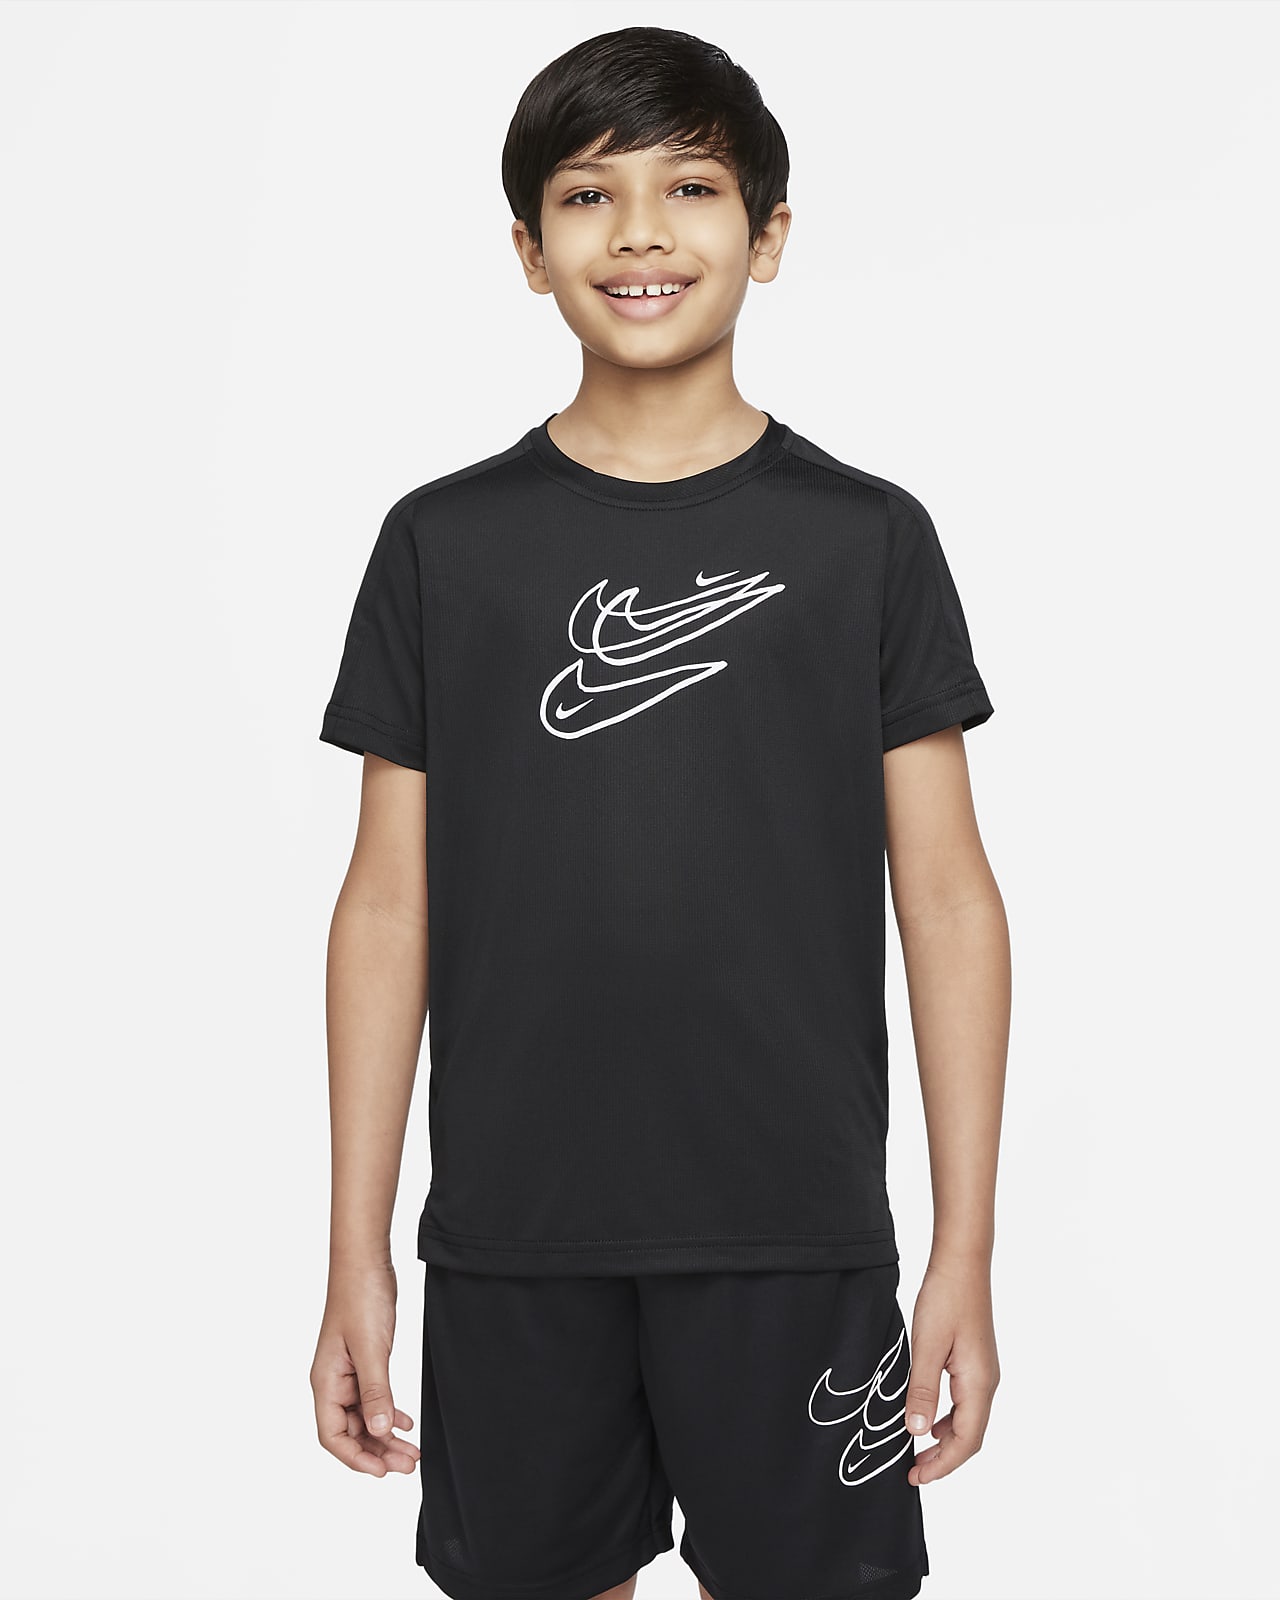 เสื้อเทรนนิ่งเด็กโต Nike Dri-FIT (ชาย)